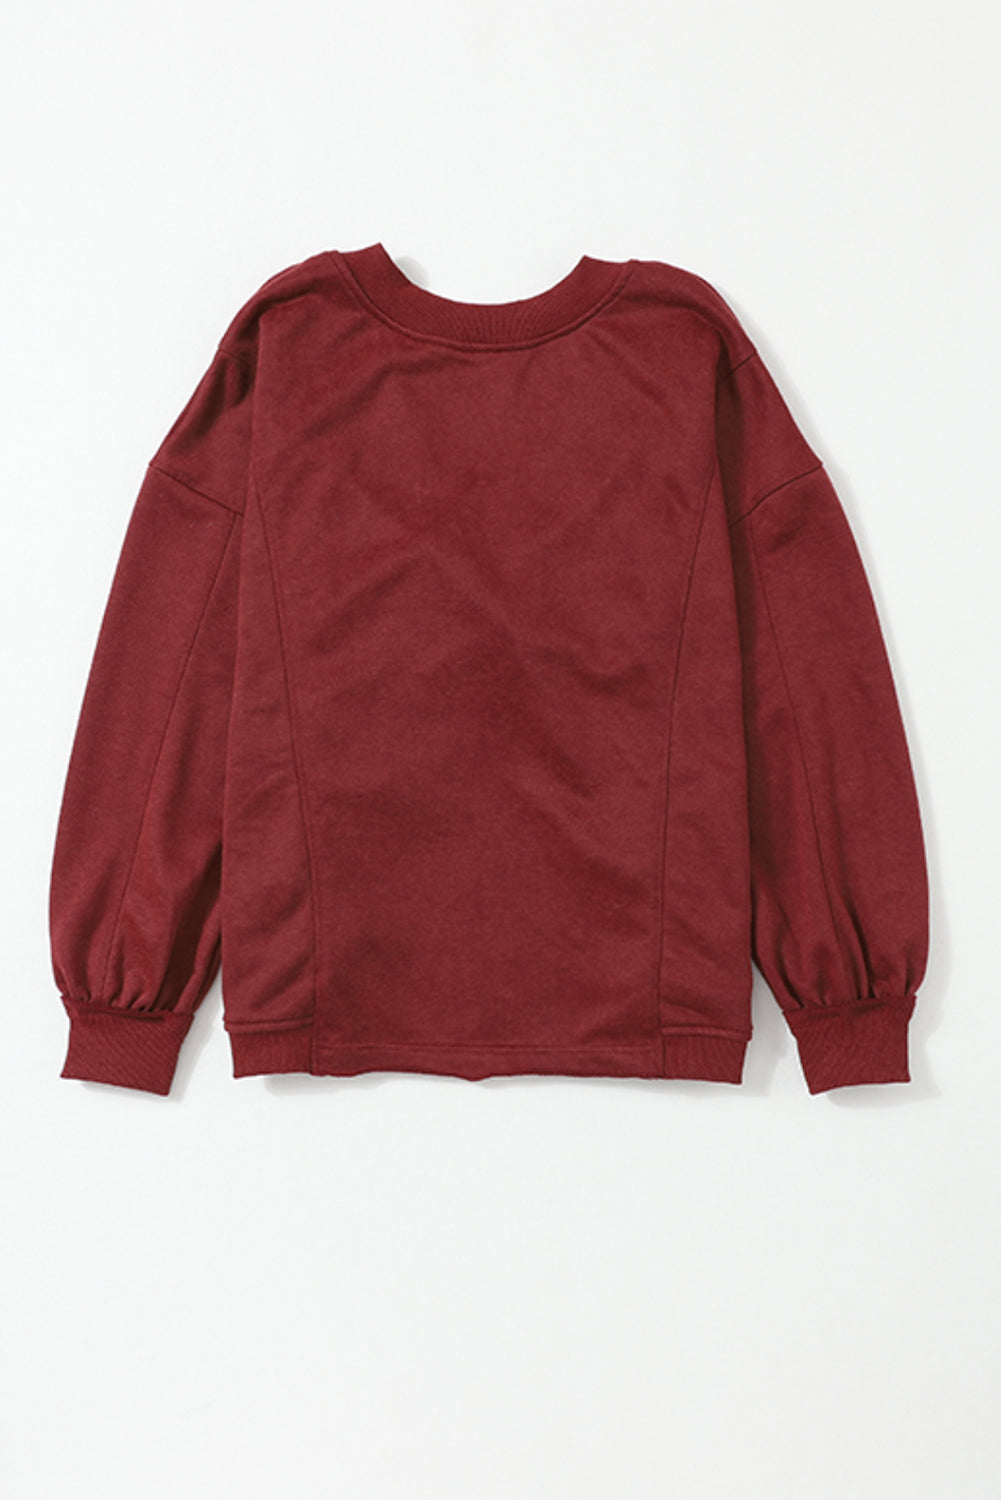 Fiery Red Exposed Seam Twist Open Back Oversized Sweatshirt